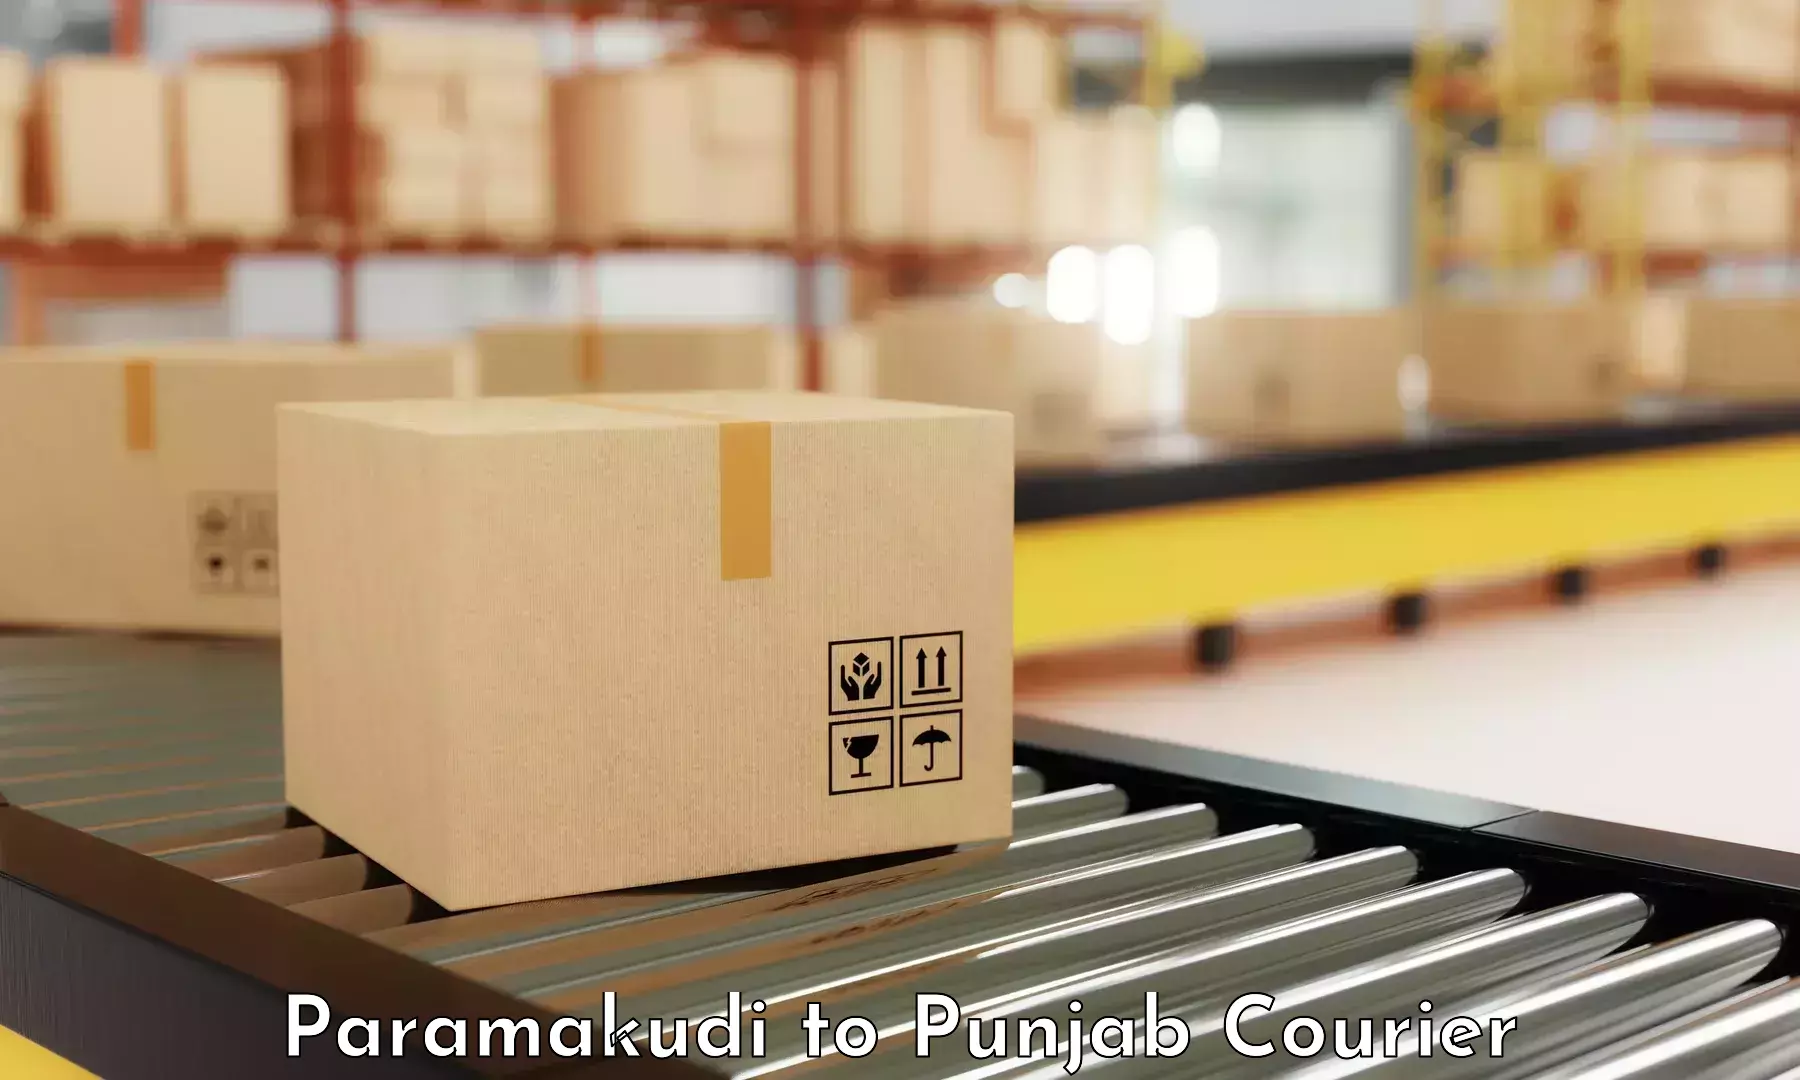 Advanced shipping network Paramakudi to Patiala